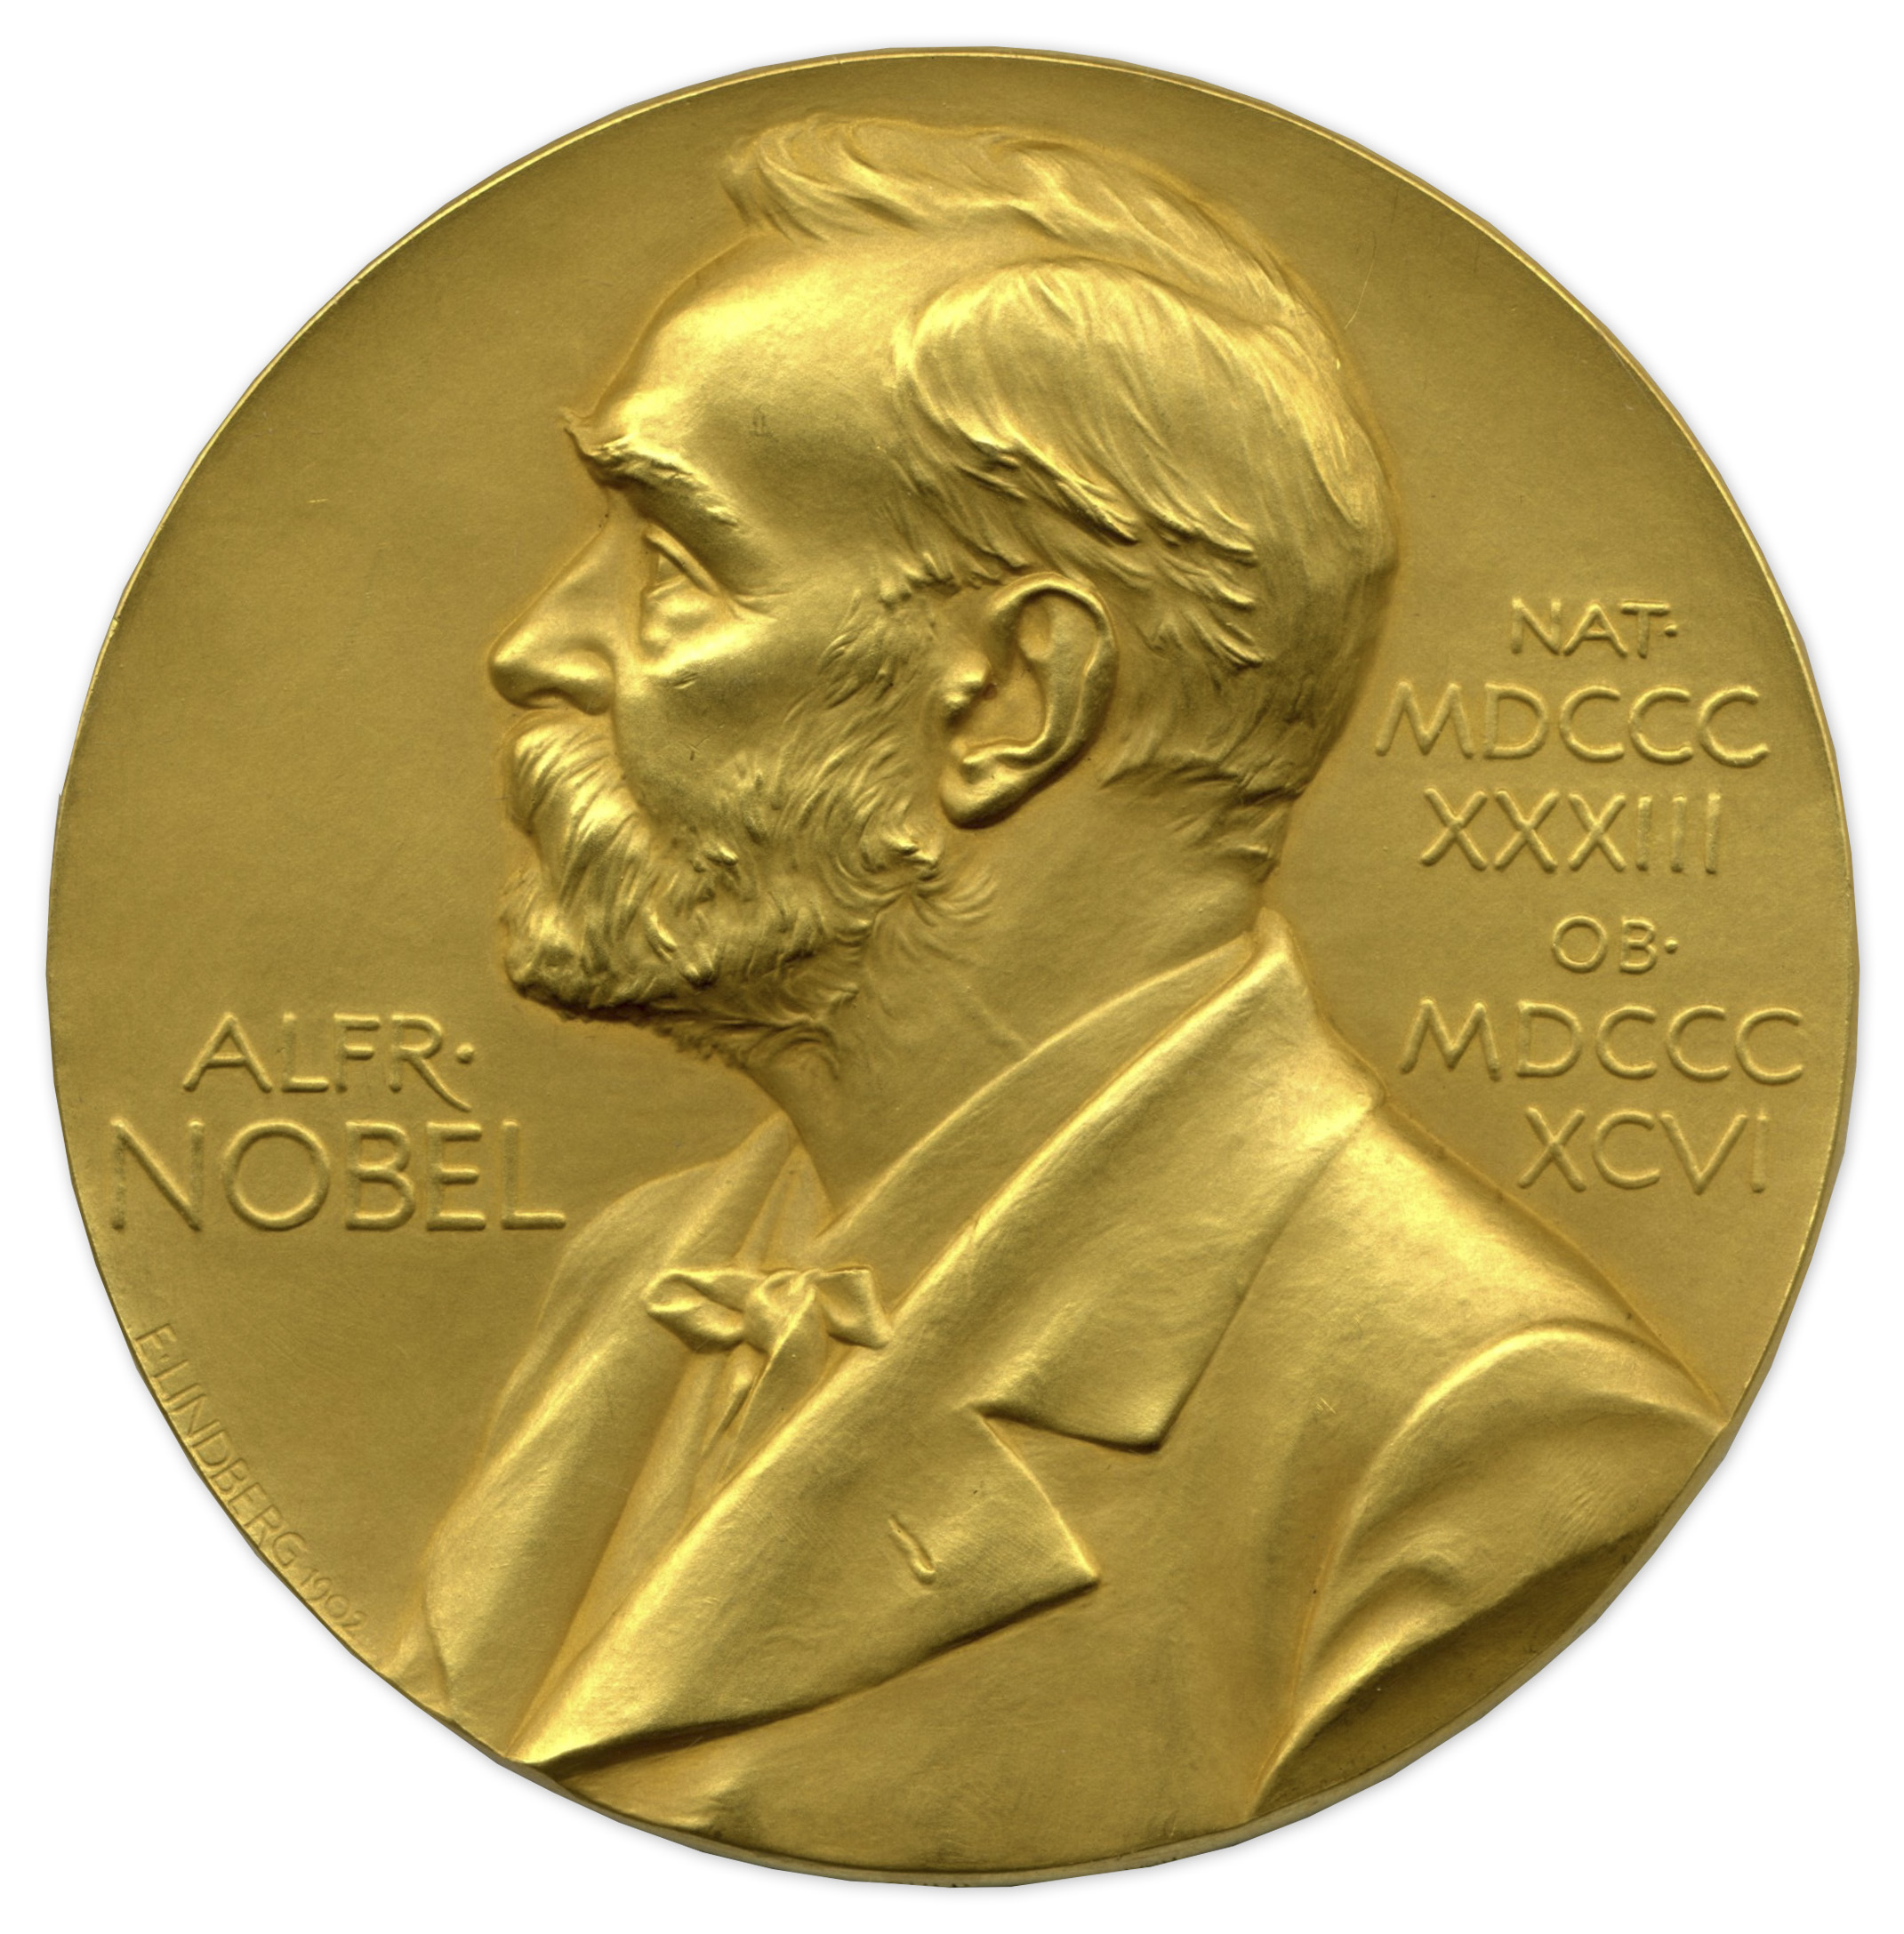 Nobel prize awards. Нобелевская премия 1901. Нобель и Нобелевская премия. Золотая медаль Нобелевской премии.